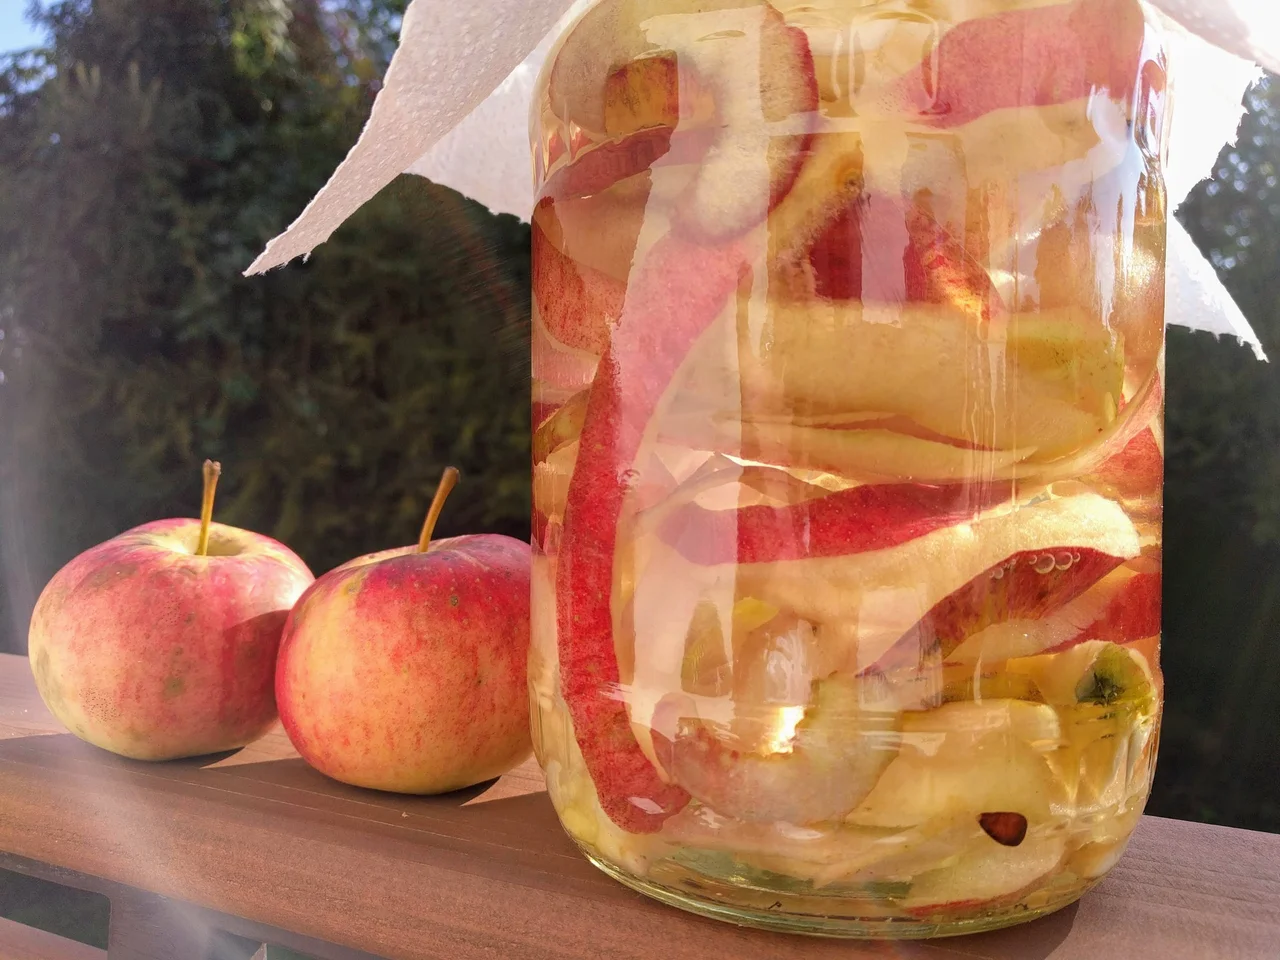 Domowy ocet jabłkowy z resztek owoców. Nie wyrzucaj - wykorzystaj!